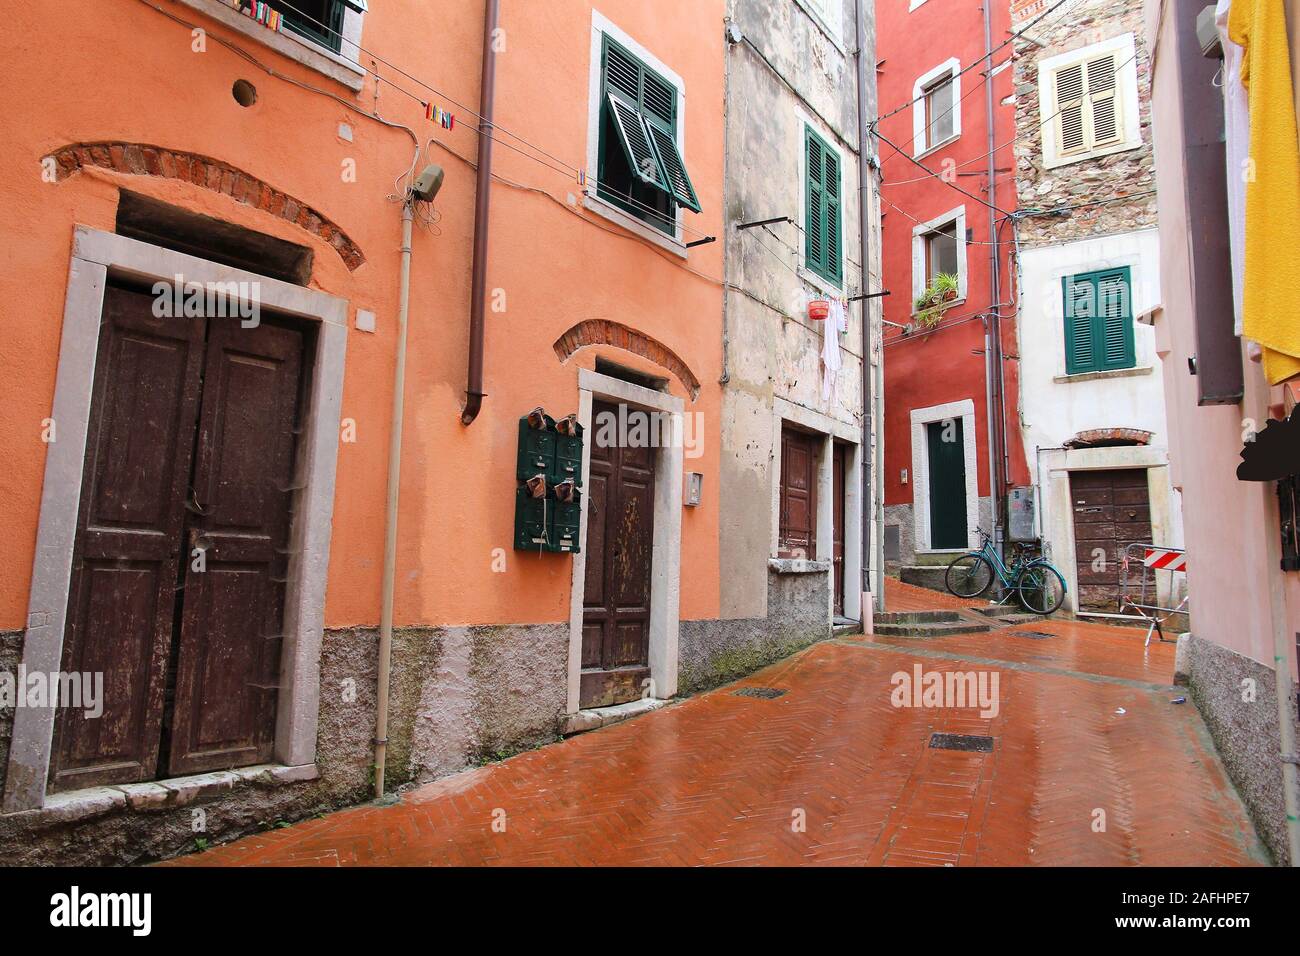 Carrara, Italy - Old Town in the region of Tuscany. Rainy street view. Stock Photo